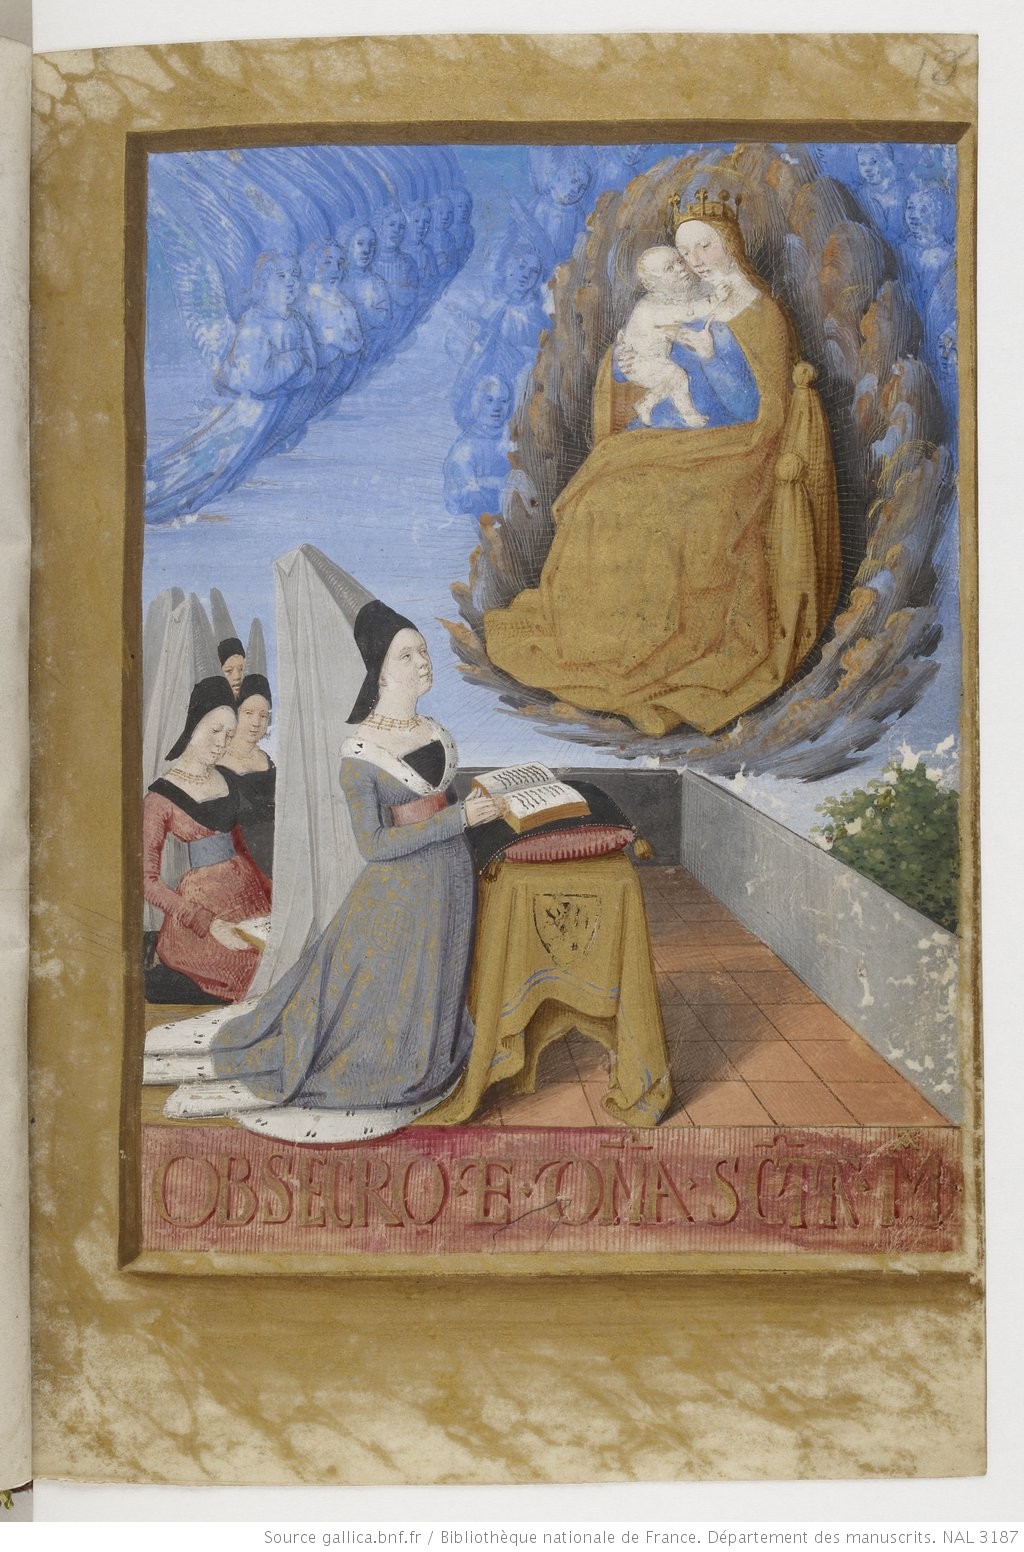 1475 ca Fouquet Heures dites de Baudricourt BNF Lat 3187 f 8